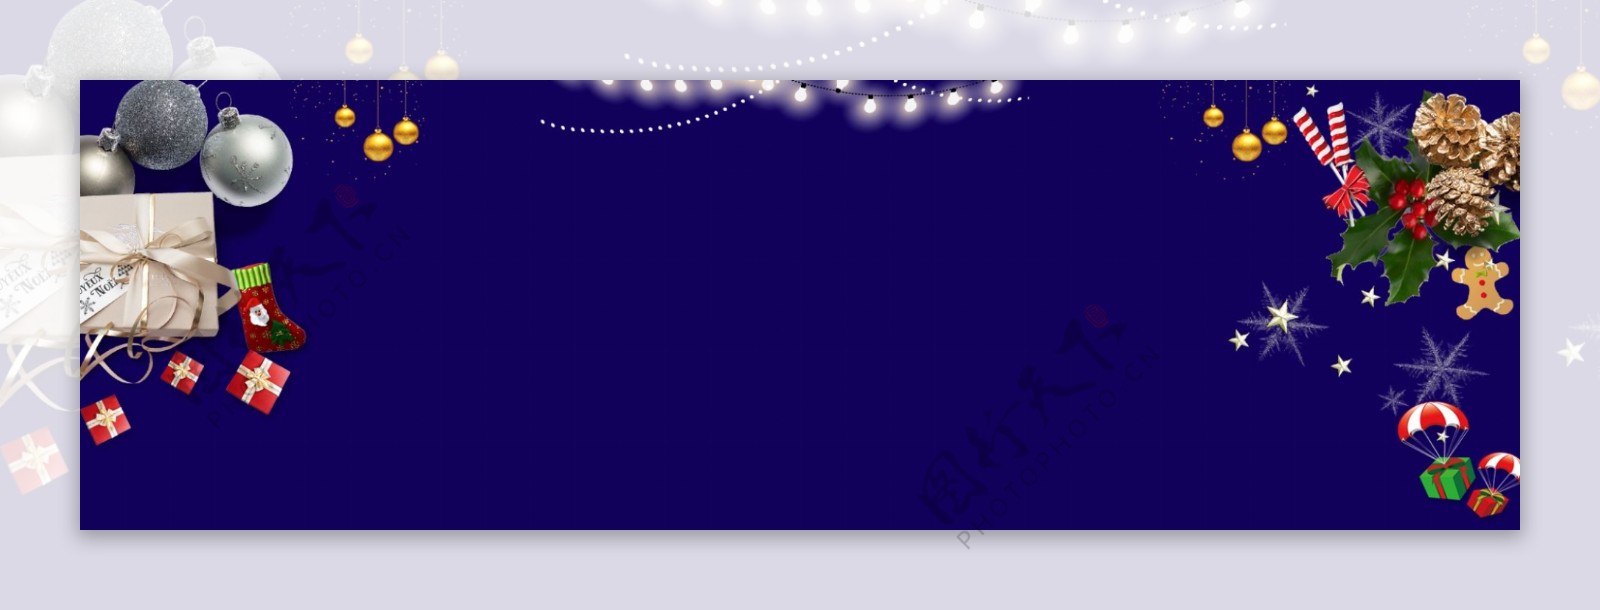 蓝色圣诞树圣诞节卡通banner背景